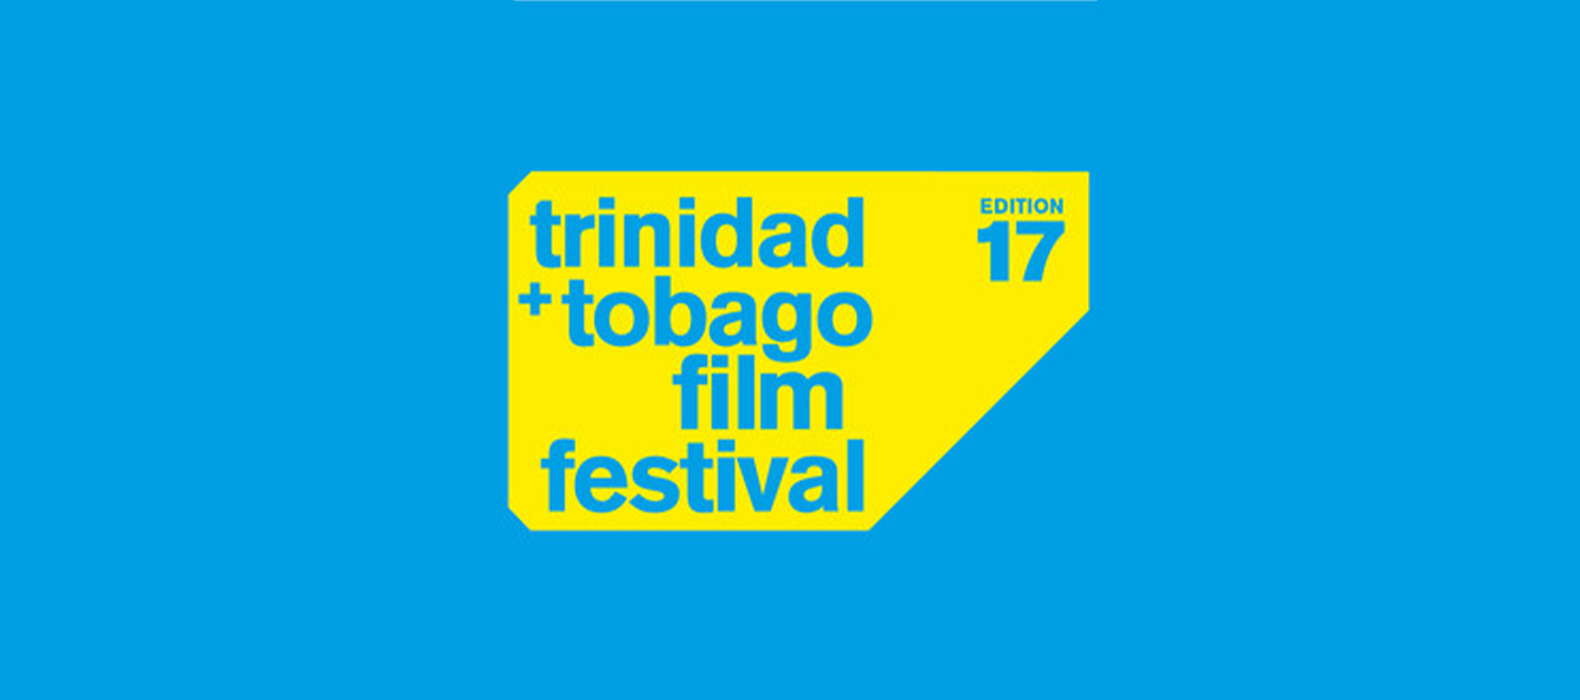 جشنواره ترینیداد و توباگو